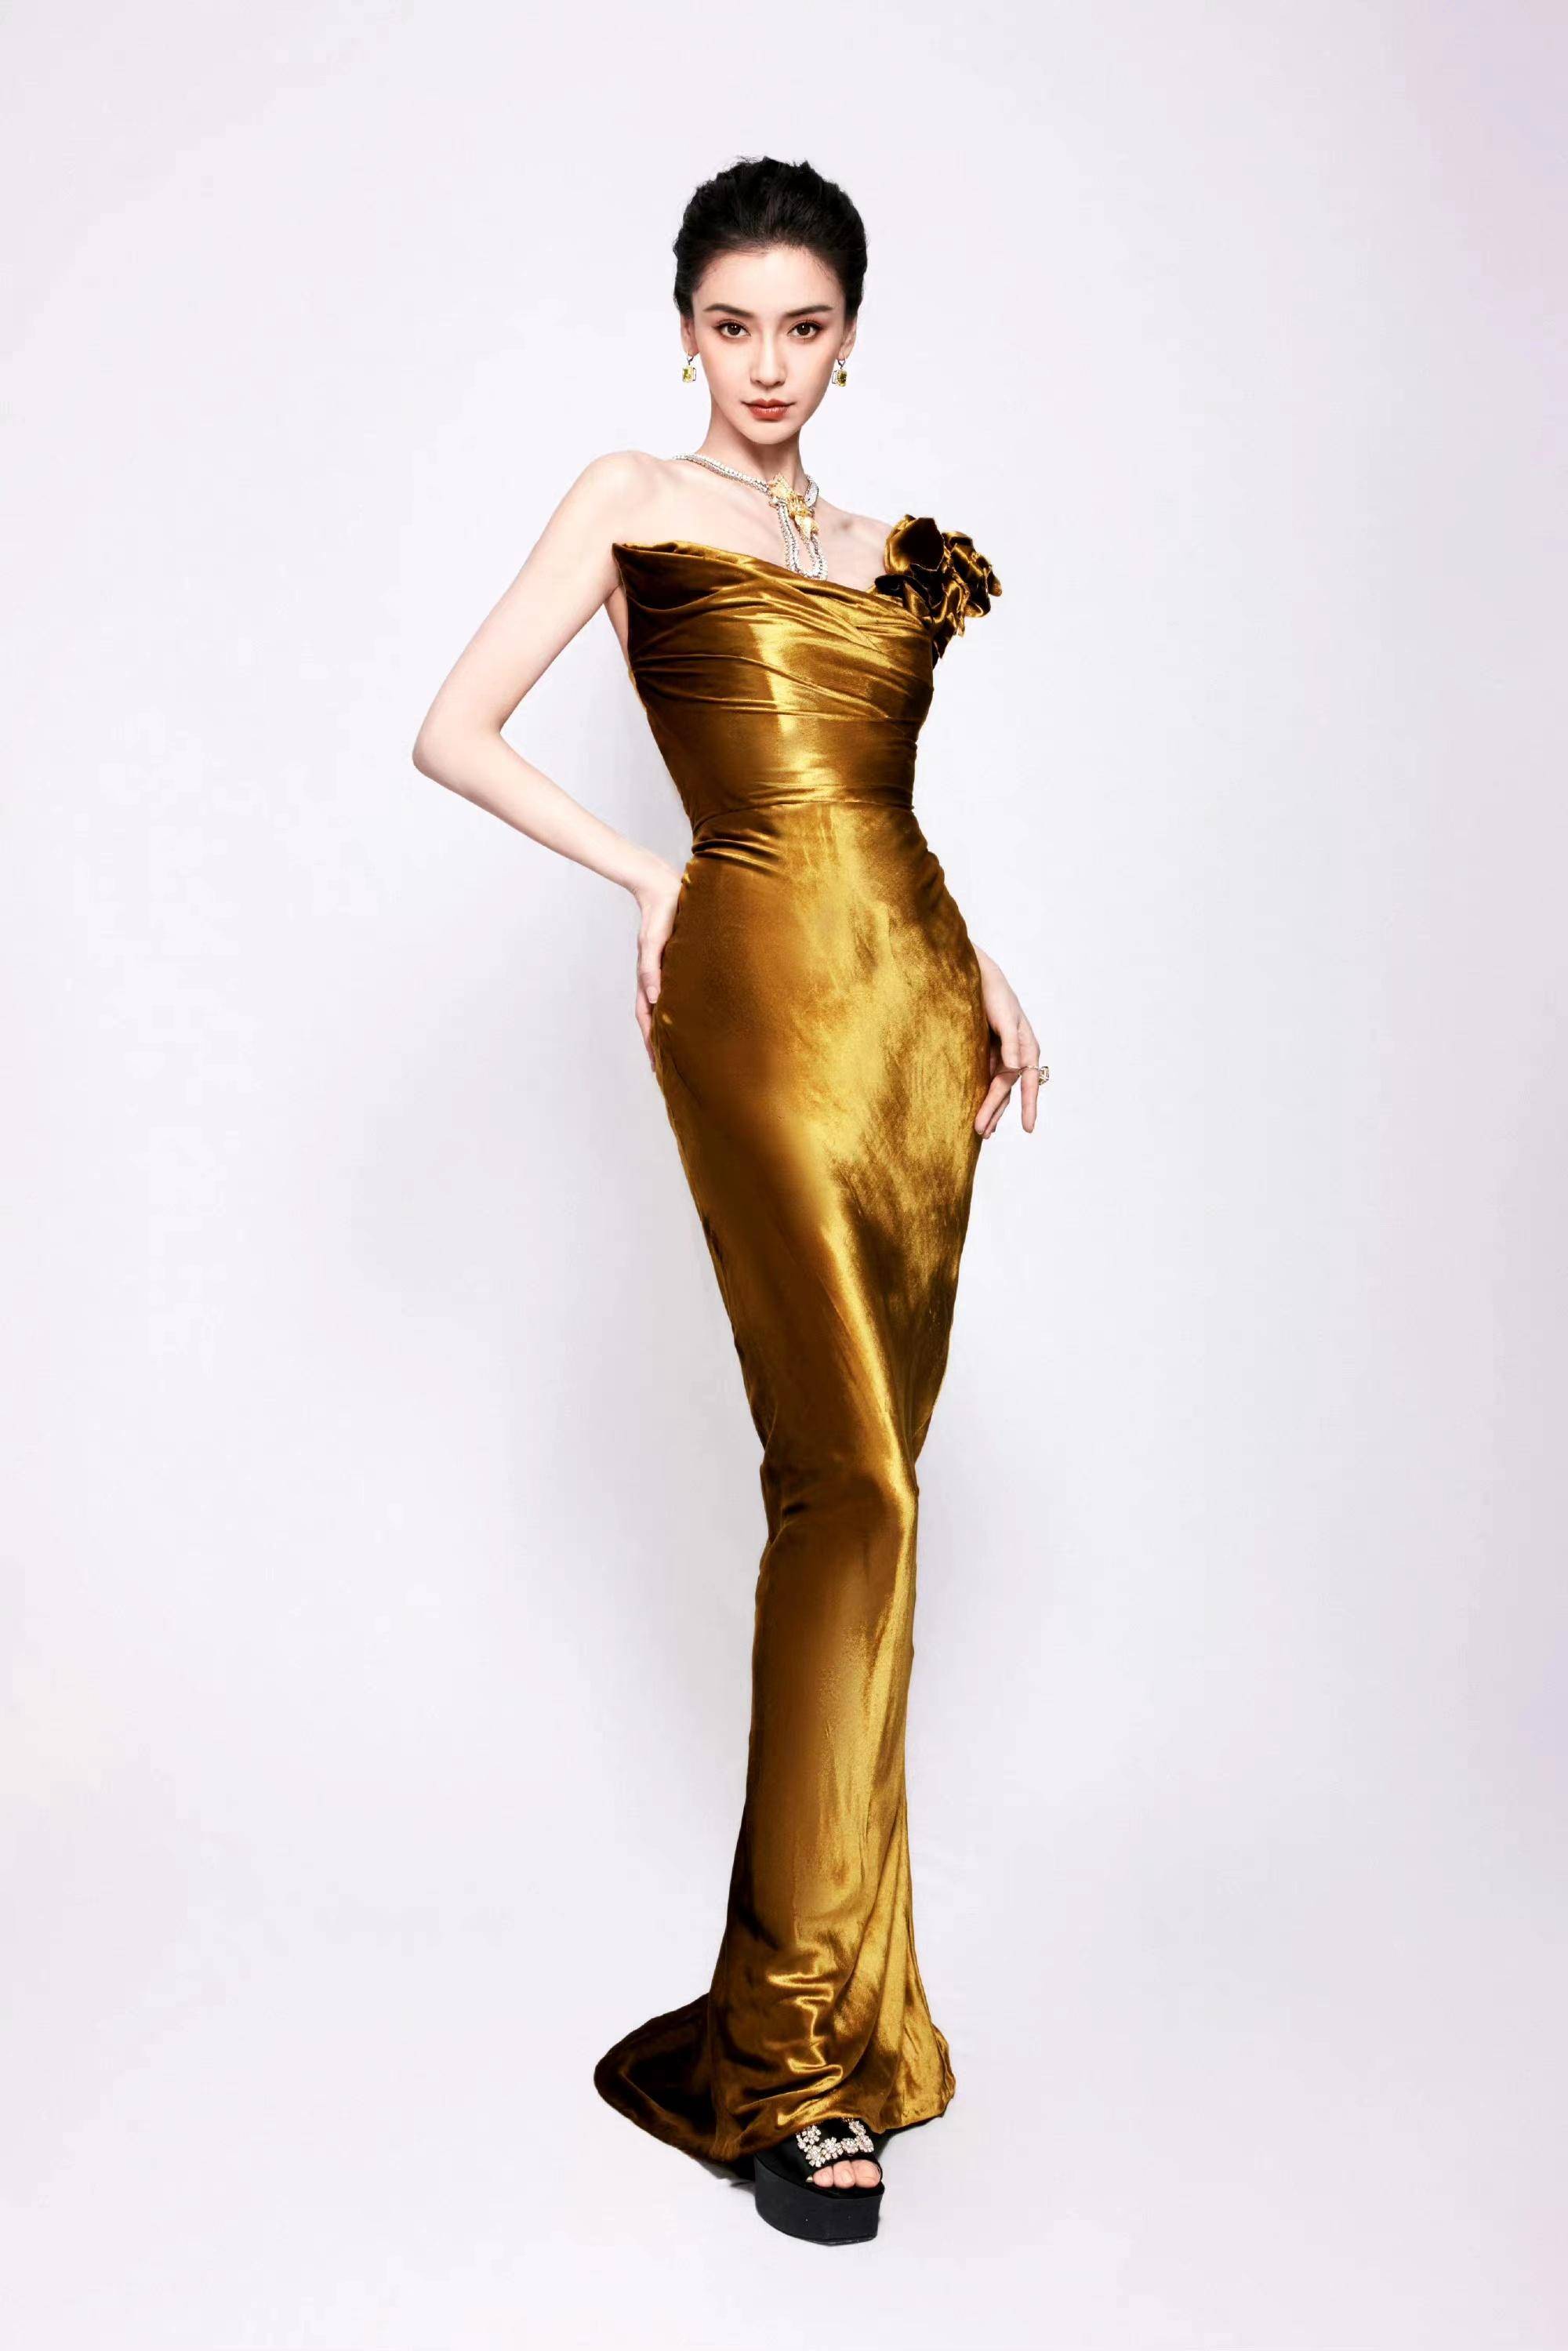 杨颖真的很适合当平面模特,一袭金色礼服大秀美背,确实漂亮